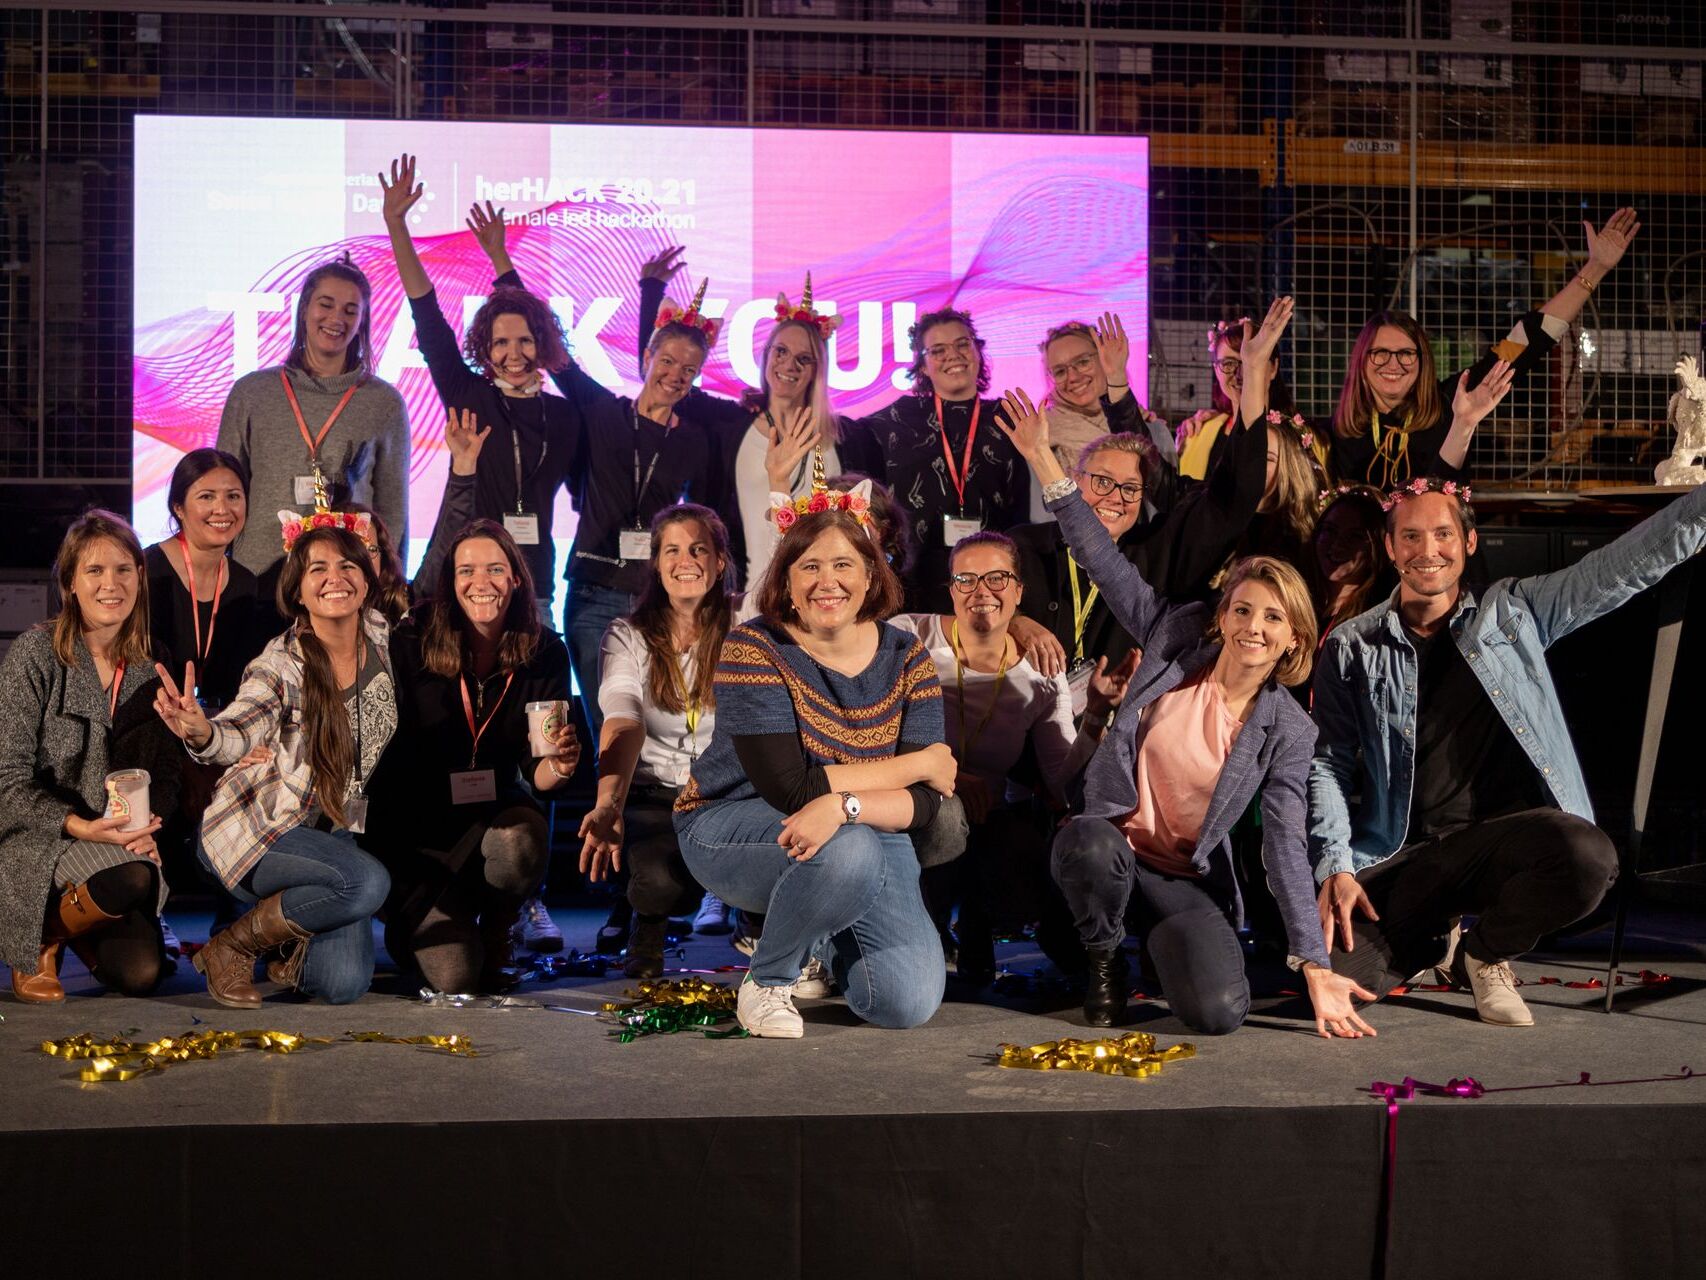 Το γυναικείο hackaton "HerHack", που διοργανώθηκε στις 6 και 7 Νοεμβρίου στο πλαίσιο της "Swiss Digital Day", κέρδισε η Team Iconics, που σχηματίστηκε από τις Melanie Menge, Fiona Hediger, Yamina Siegrist, Maria Kliesch και Elisabeth MacKenzie (Φωτογραφία: Moritz Schmid)